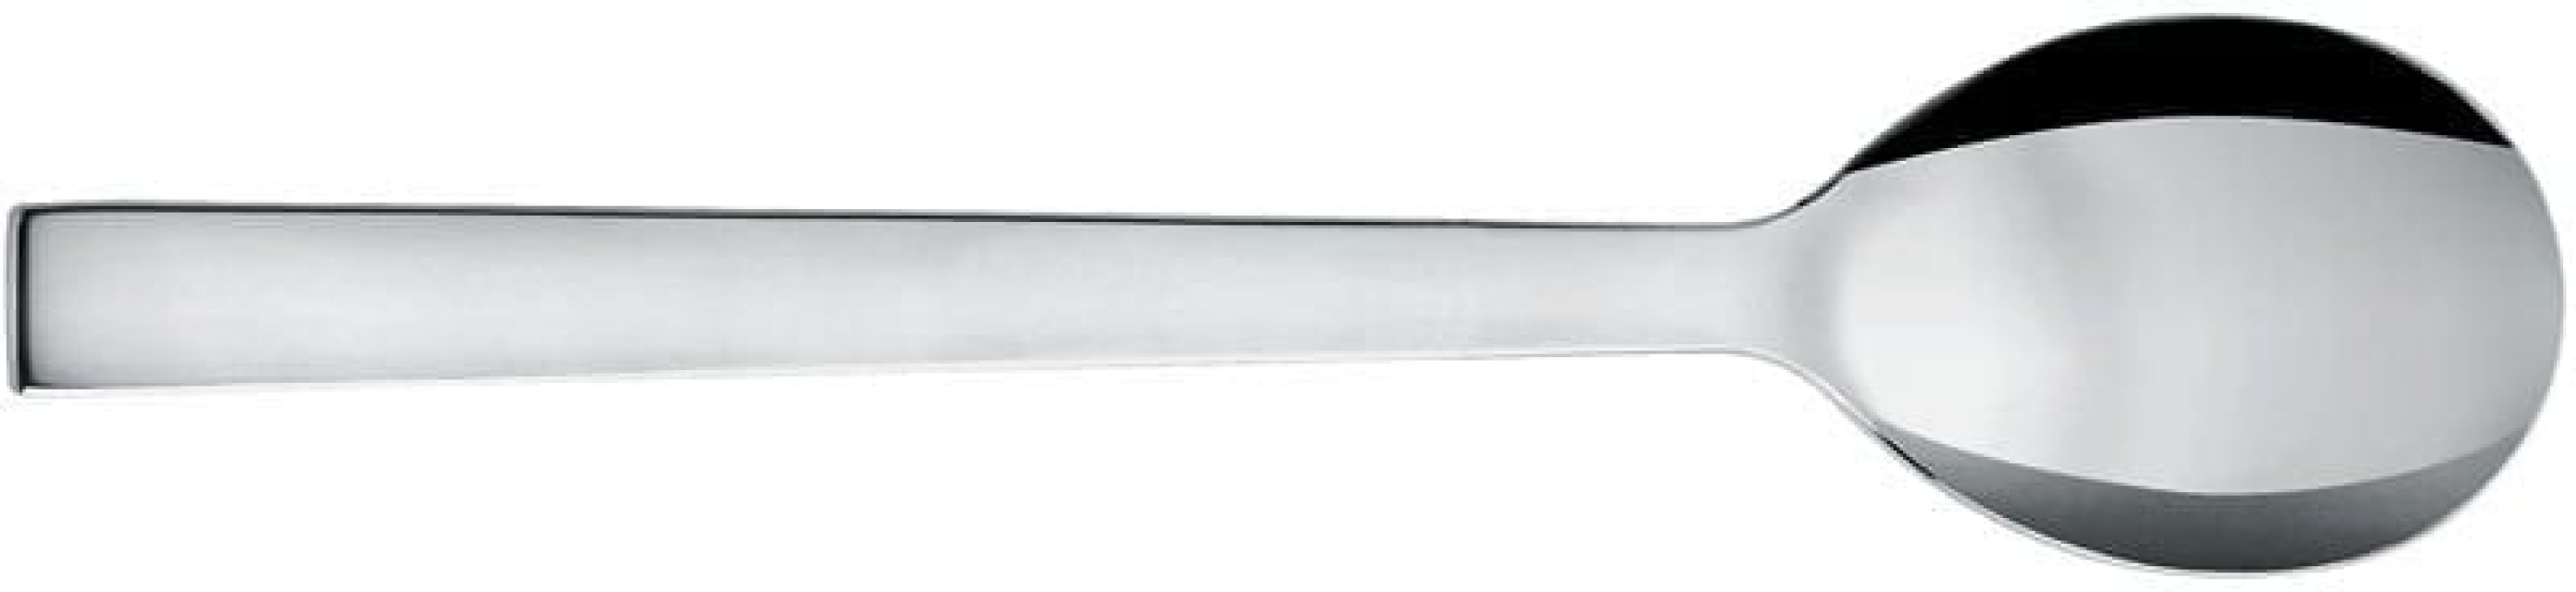 Table spoon, 19 cm, Santiago - Alessi